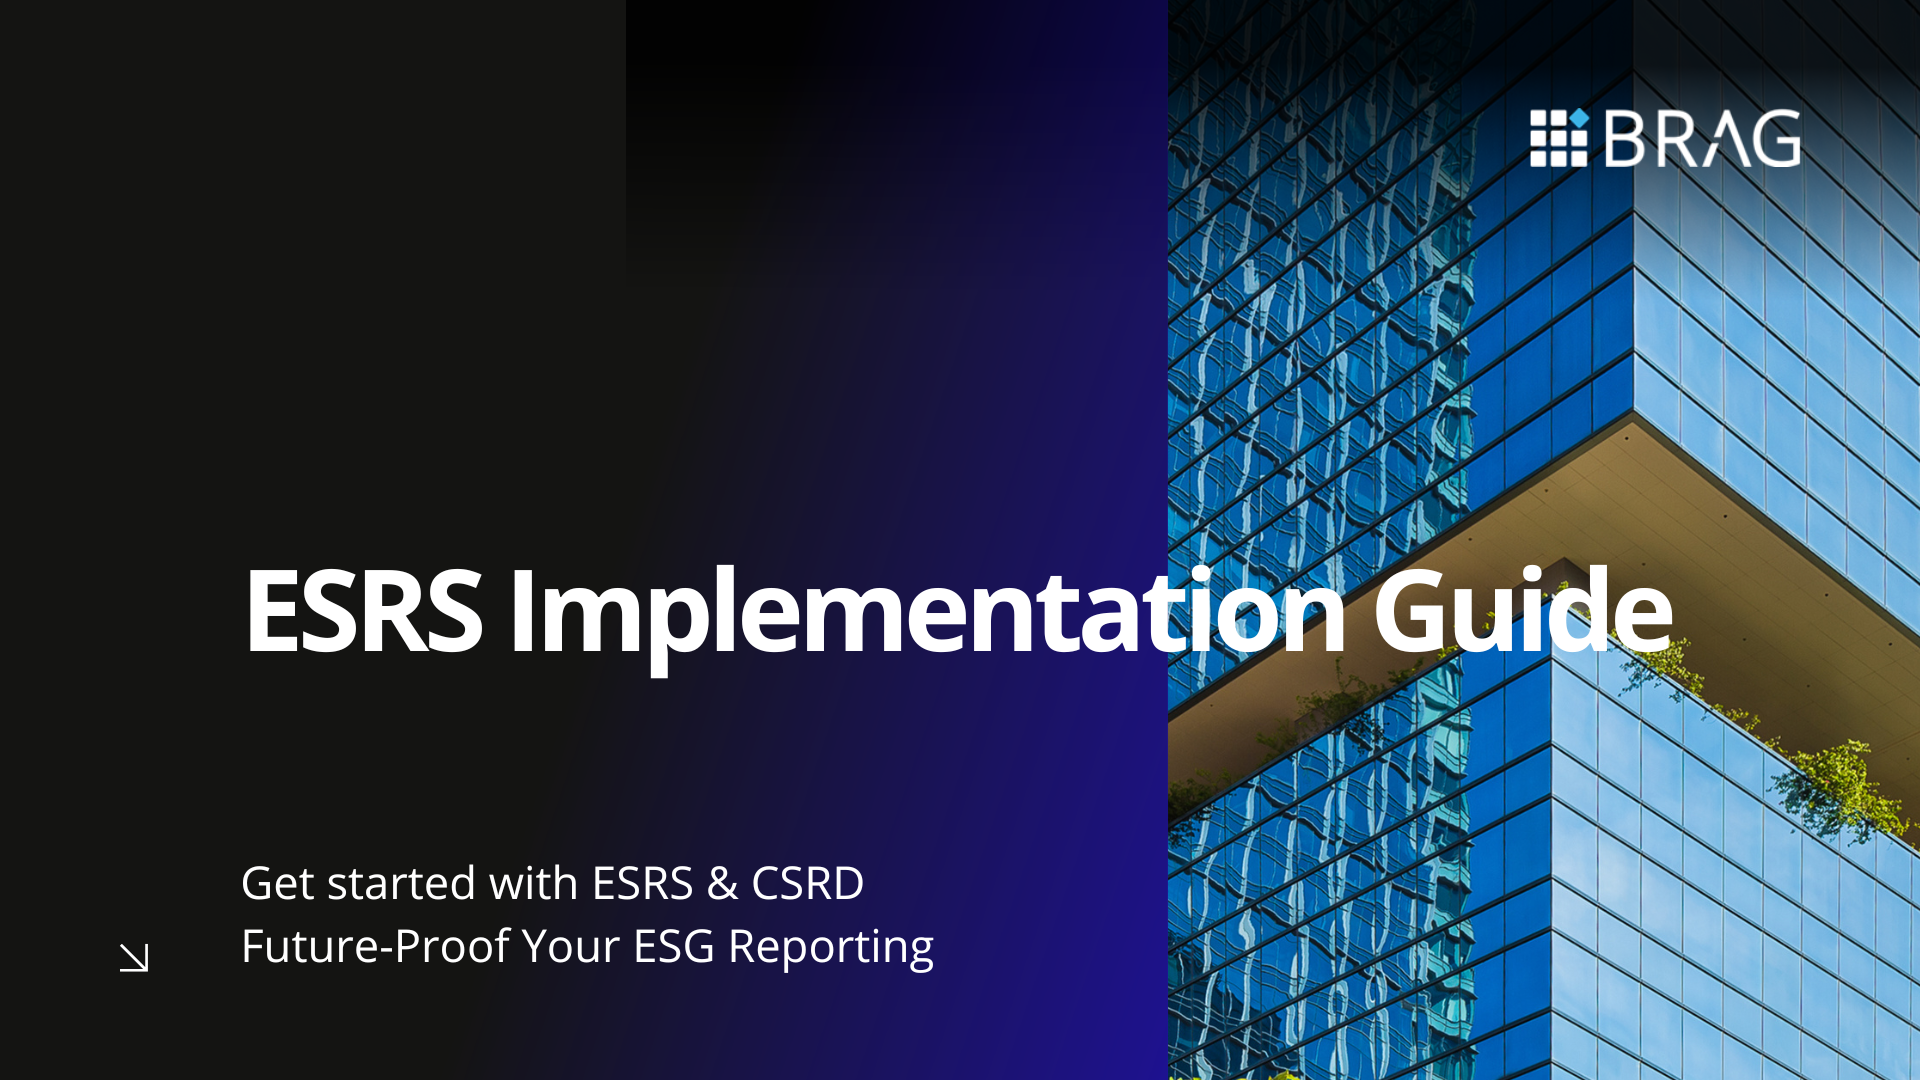 ESRS Implementation Guide BR-AG